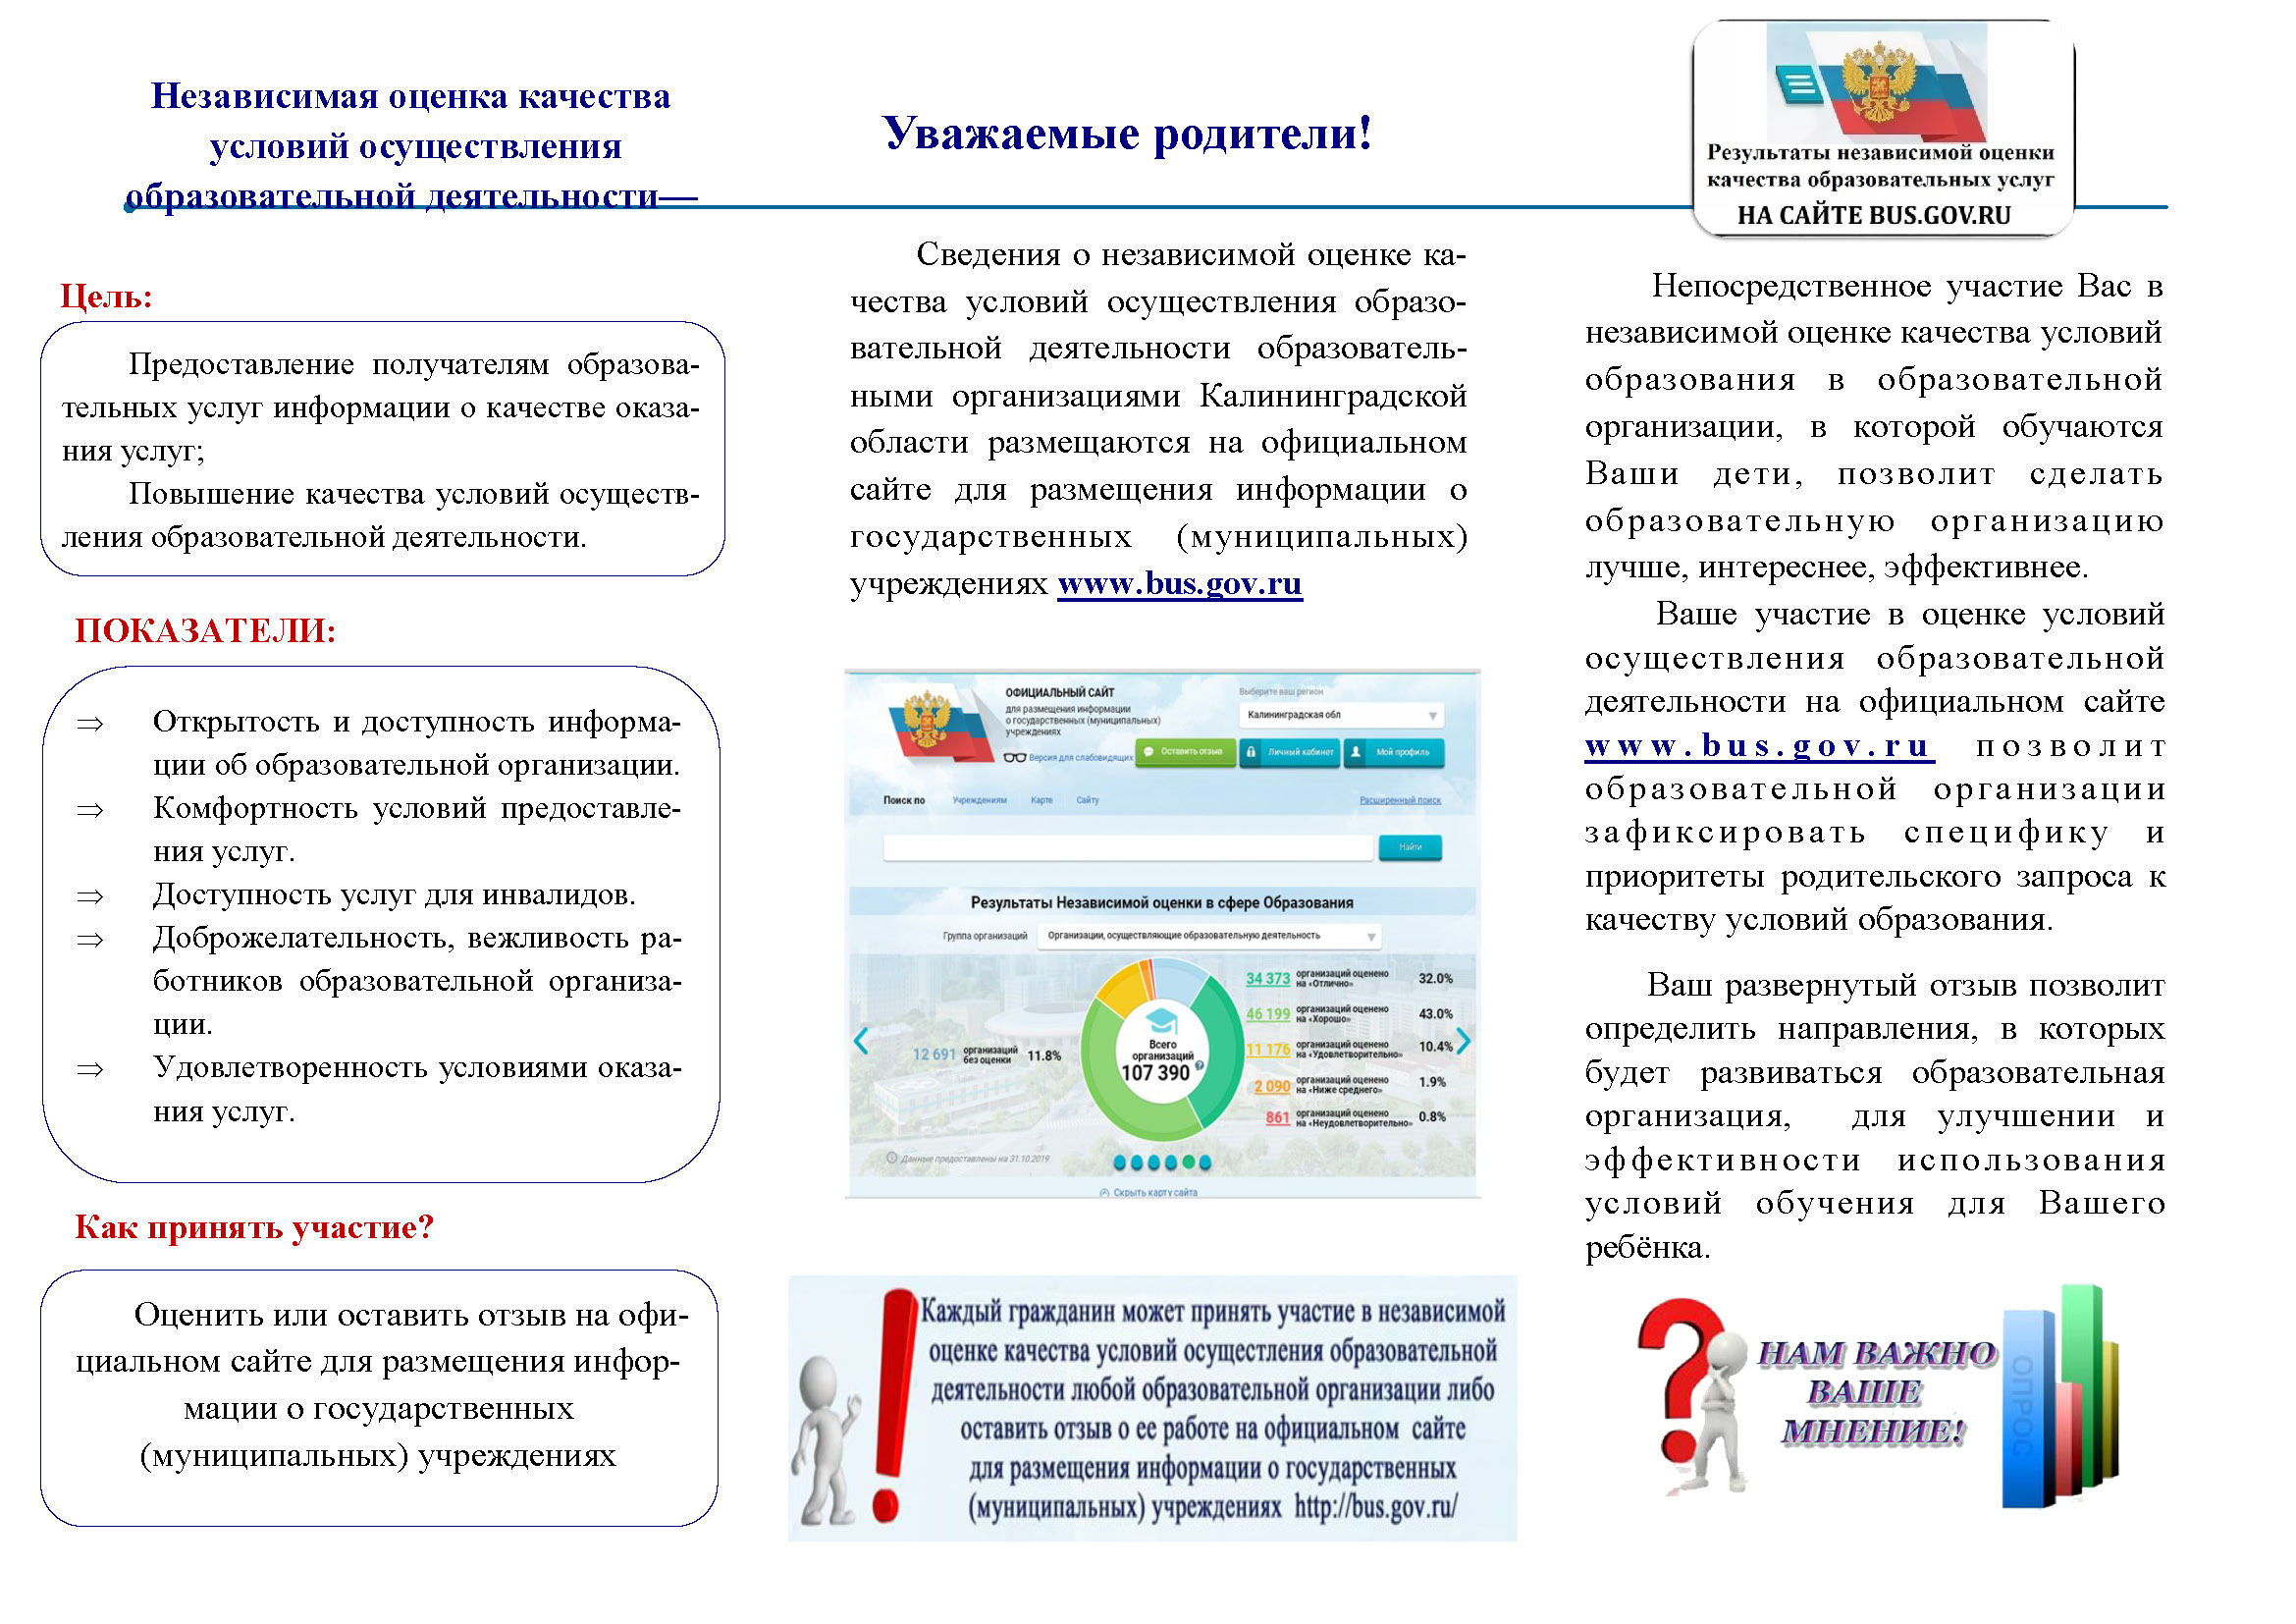 Работа с официальным сайтом bus.gov.ru